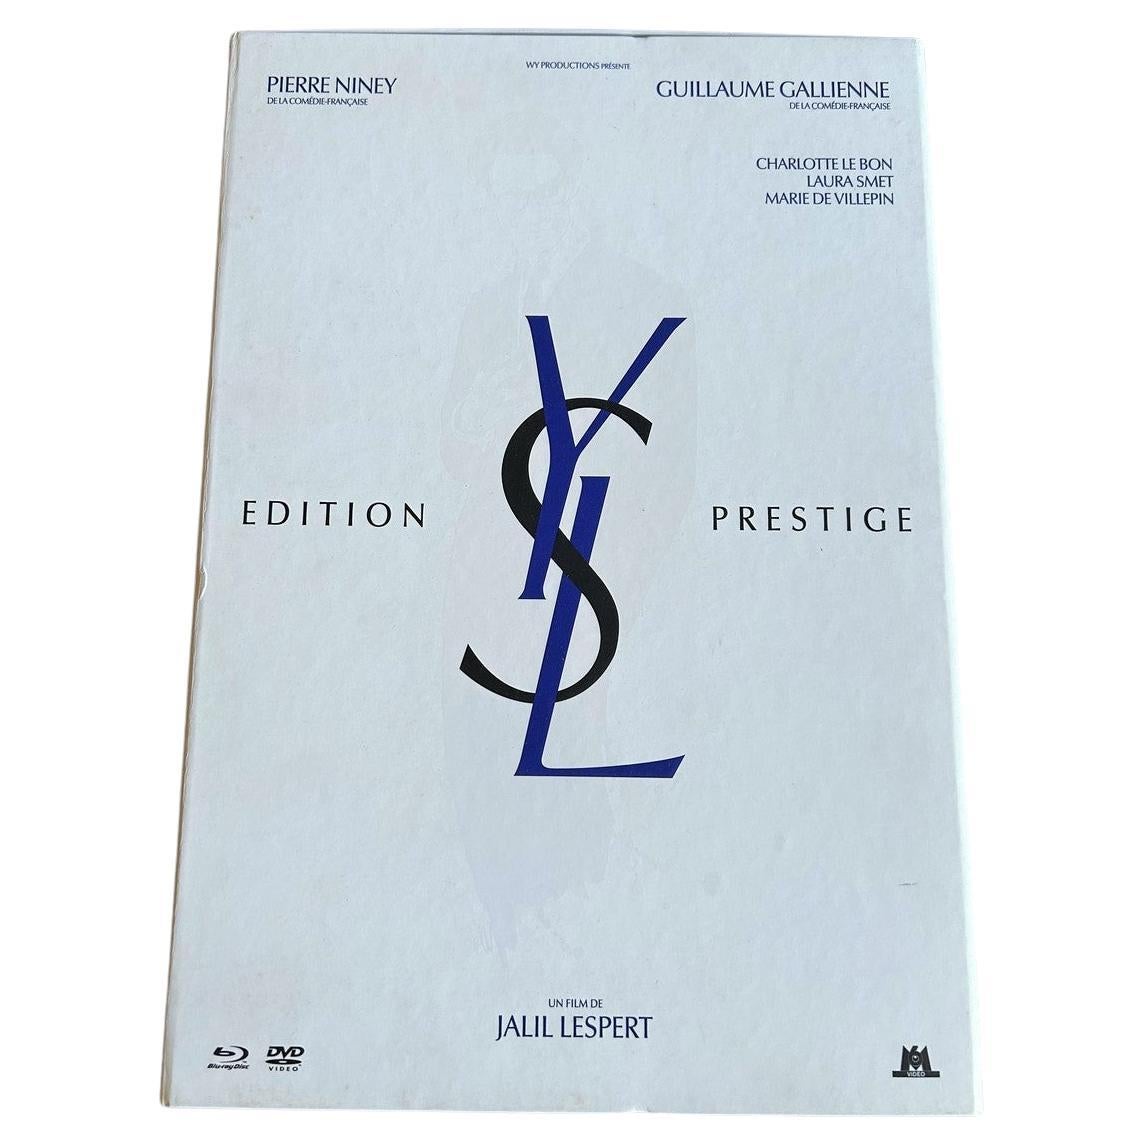 Mayo de 2014

Francia

Un estuche Edición Prestige con motivo del estreno de la película Yves Saint Laurent de Jalil Lespert, protagonizada por Pierre Niney y Guillaume Gallien, mayo de 2014. Incluye el DVD de la película, un boceto de la colección